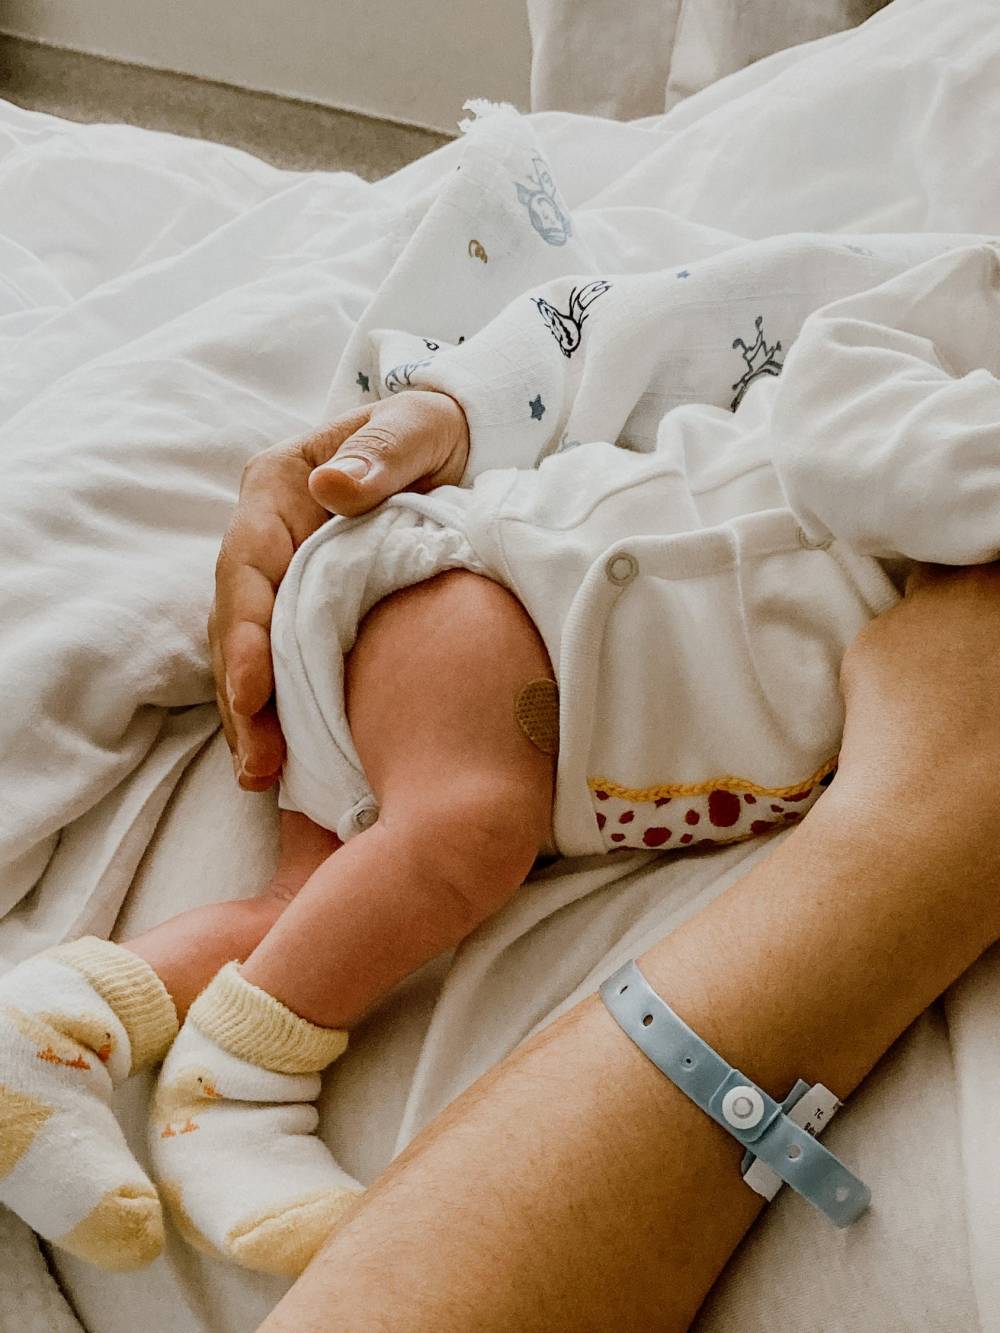 Уход за новорожденным в роддоме — пошаговая инструкция